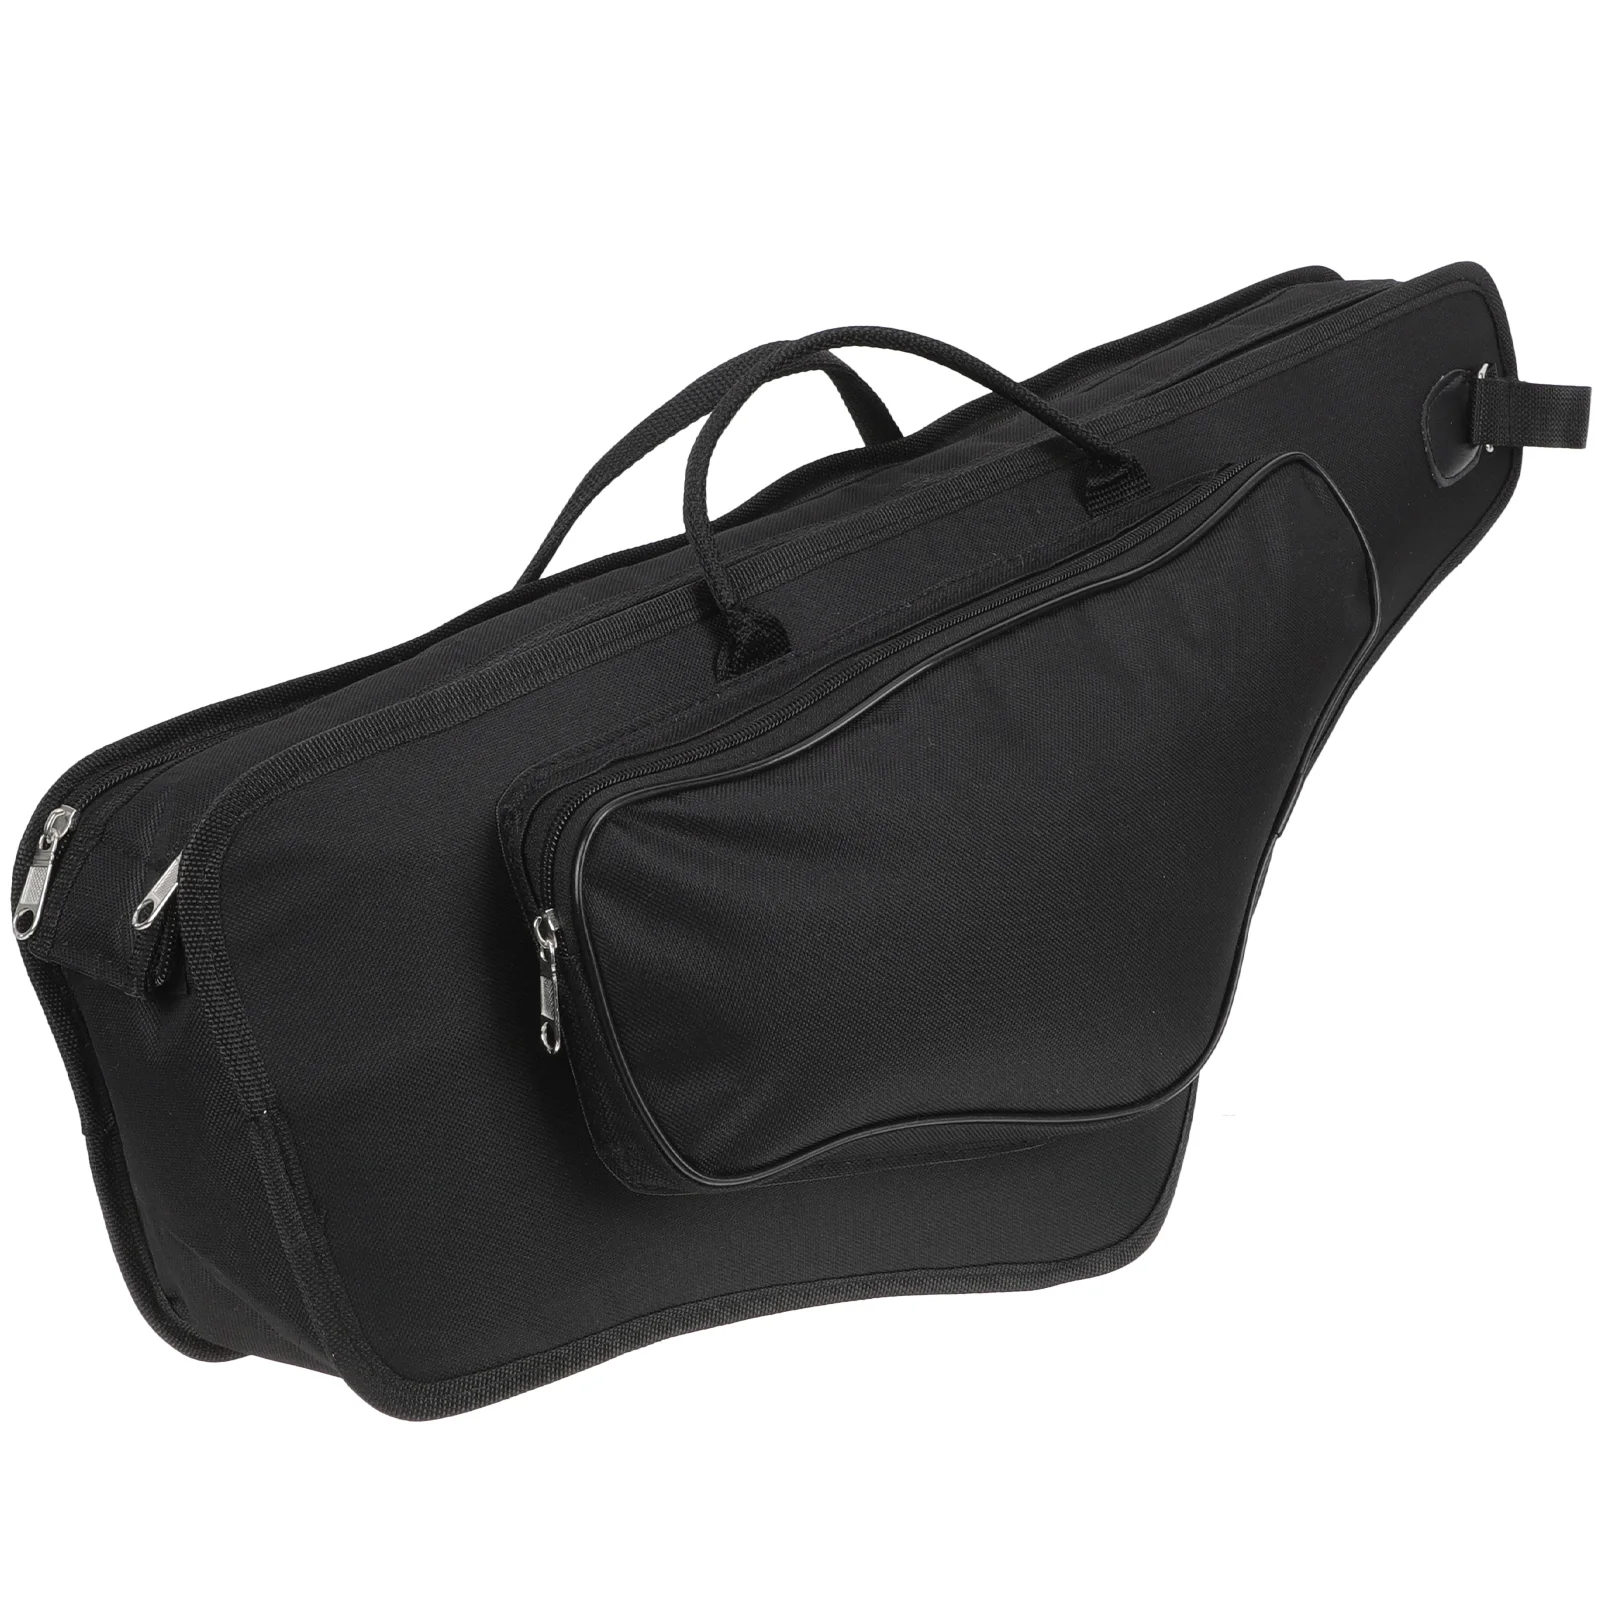 

Переносной саксофон чехол сумка для хранения альт-саксофона с плечевым ремнем и ручкой